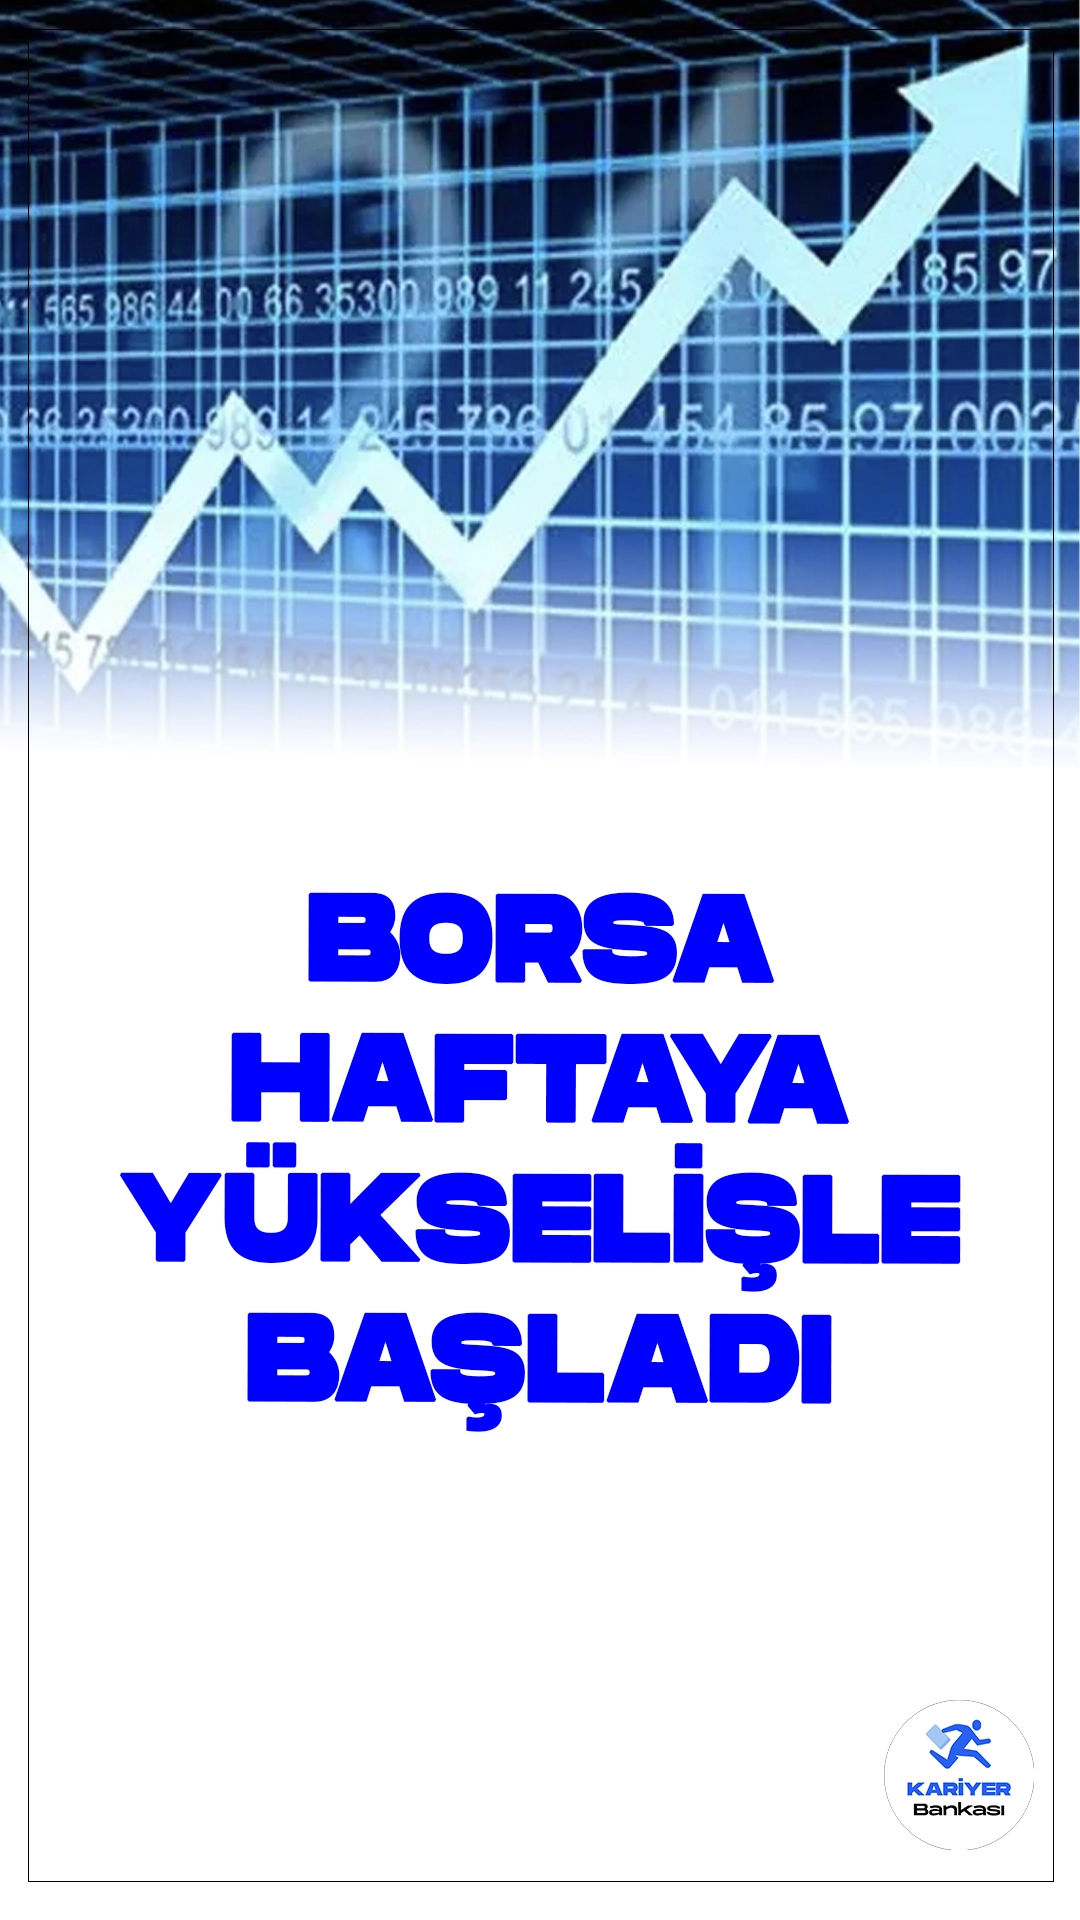 Borsa Haftaya Yükselişle Başladı.Borsa İstanbul'da BIST 100 endeksi, haftaya yüzde 0,46 yükselişle 10.901,90 puandan başladı.